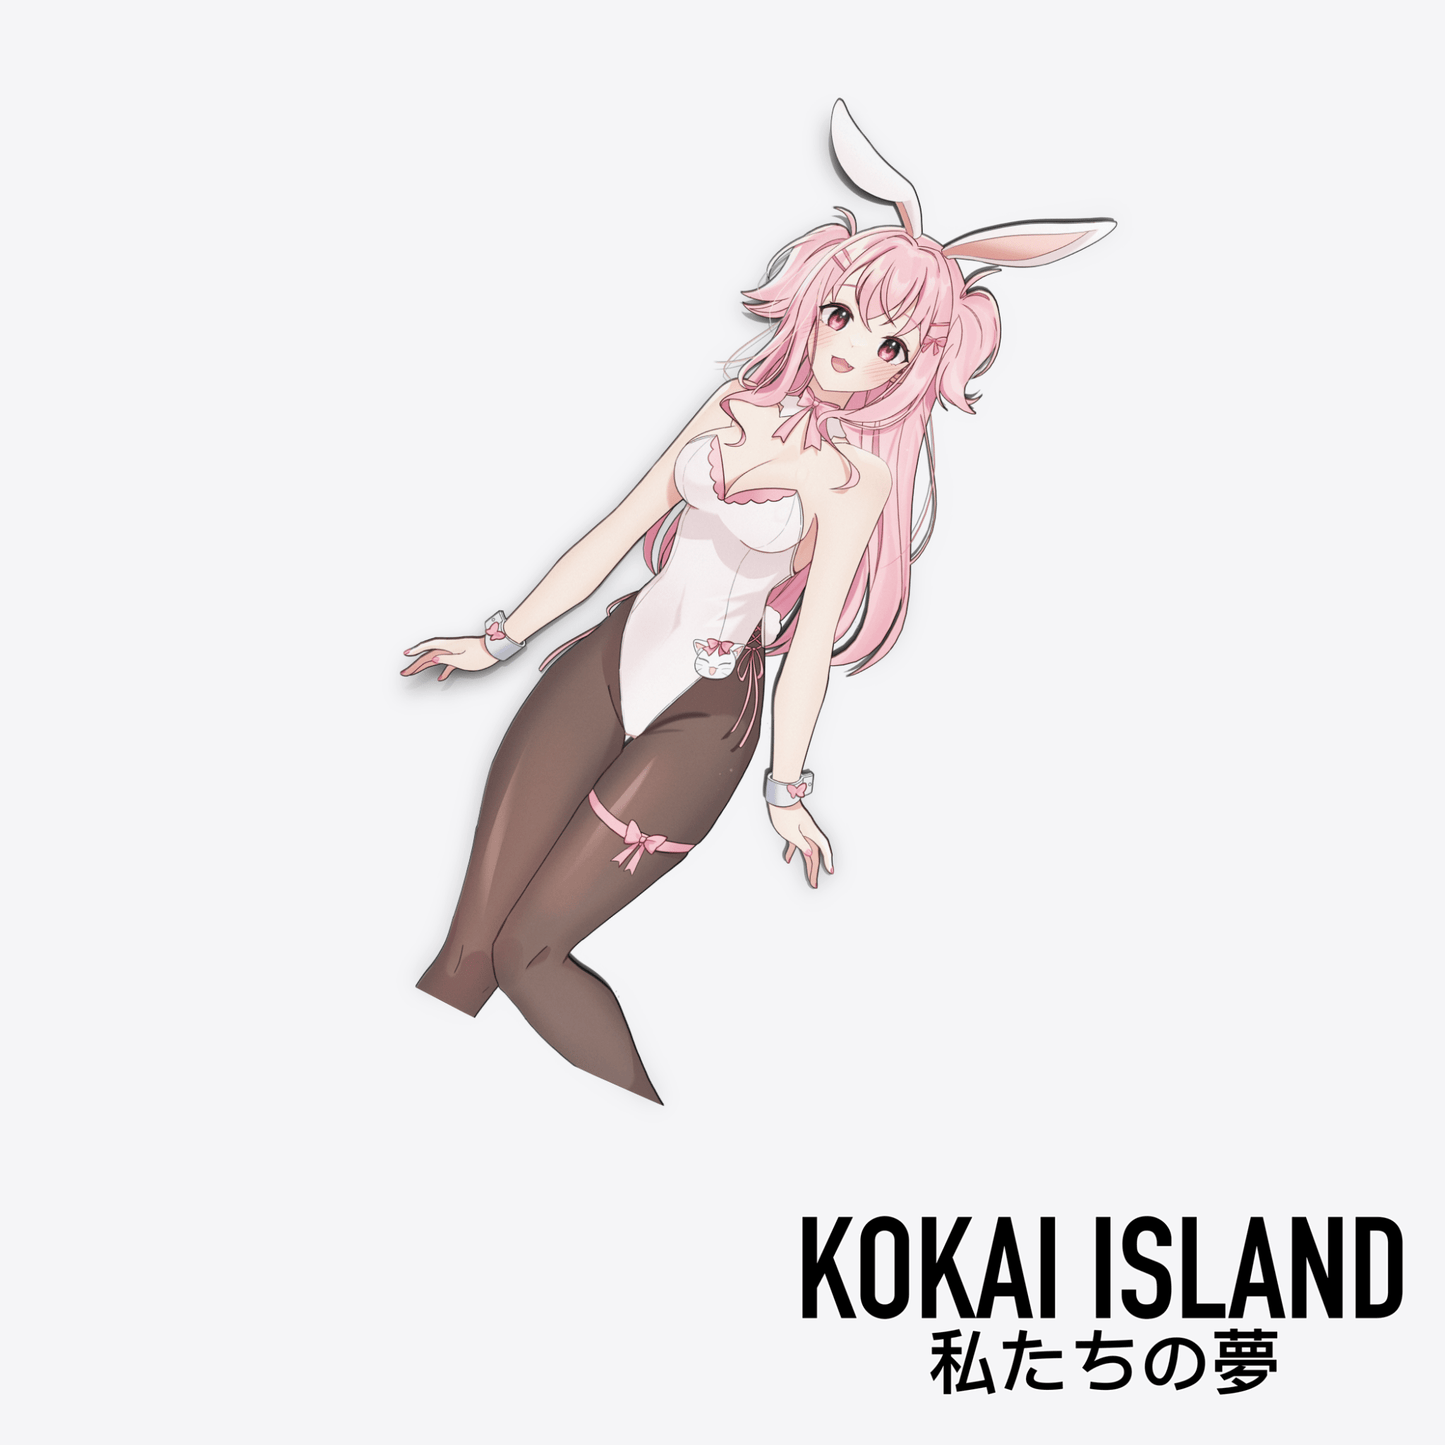 Kai Bunny DecalDecalKokai Island